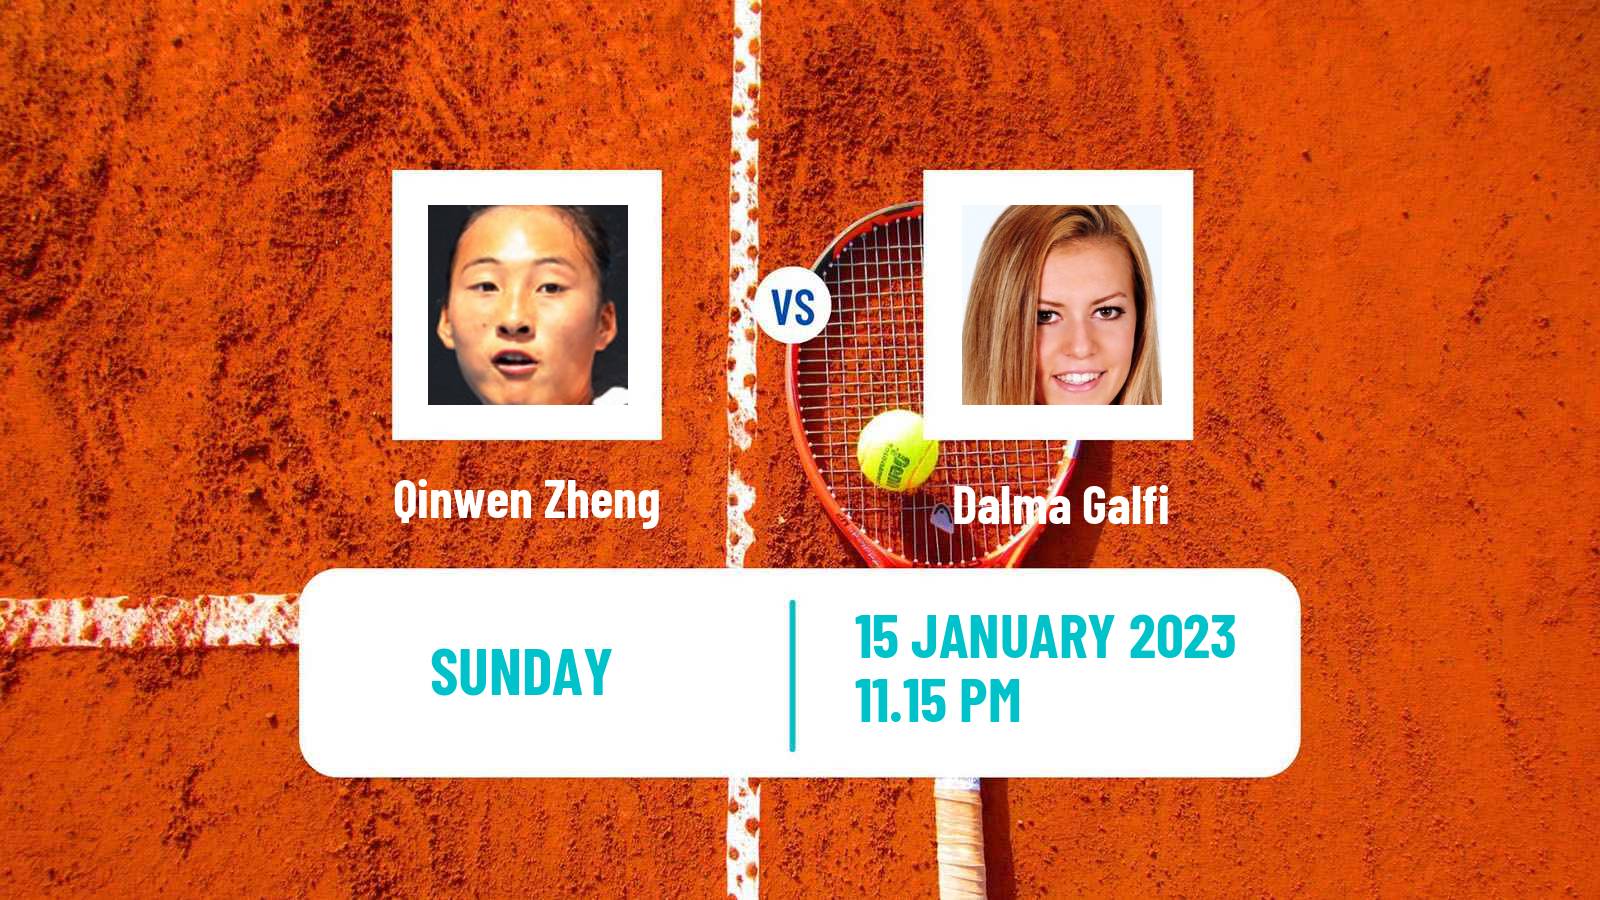 Tennis WTA Australian Open Qinwen Zheng - Dalma Galfi